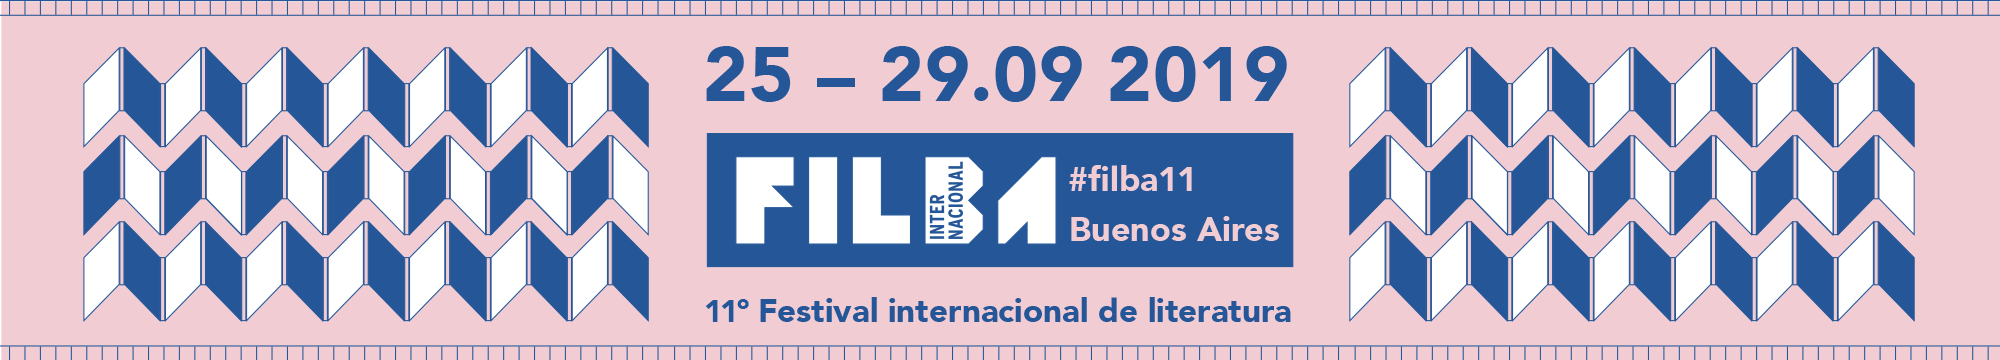 Filba Internacional - Buenos Aires - 2019